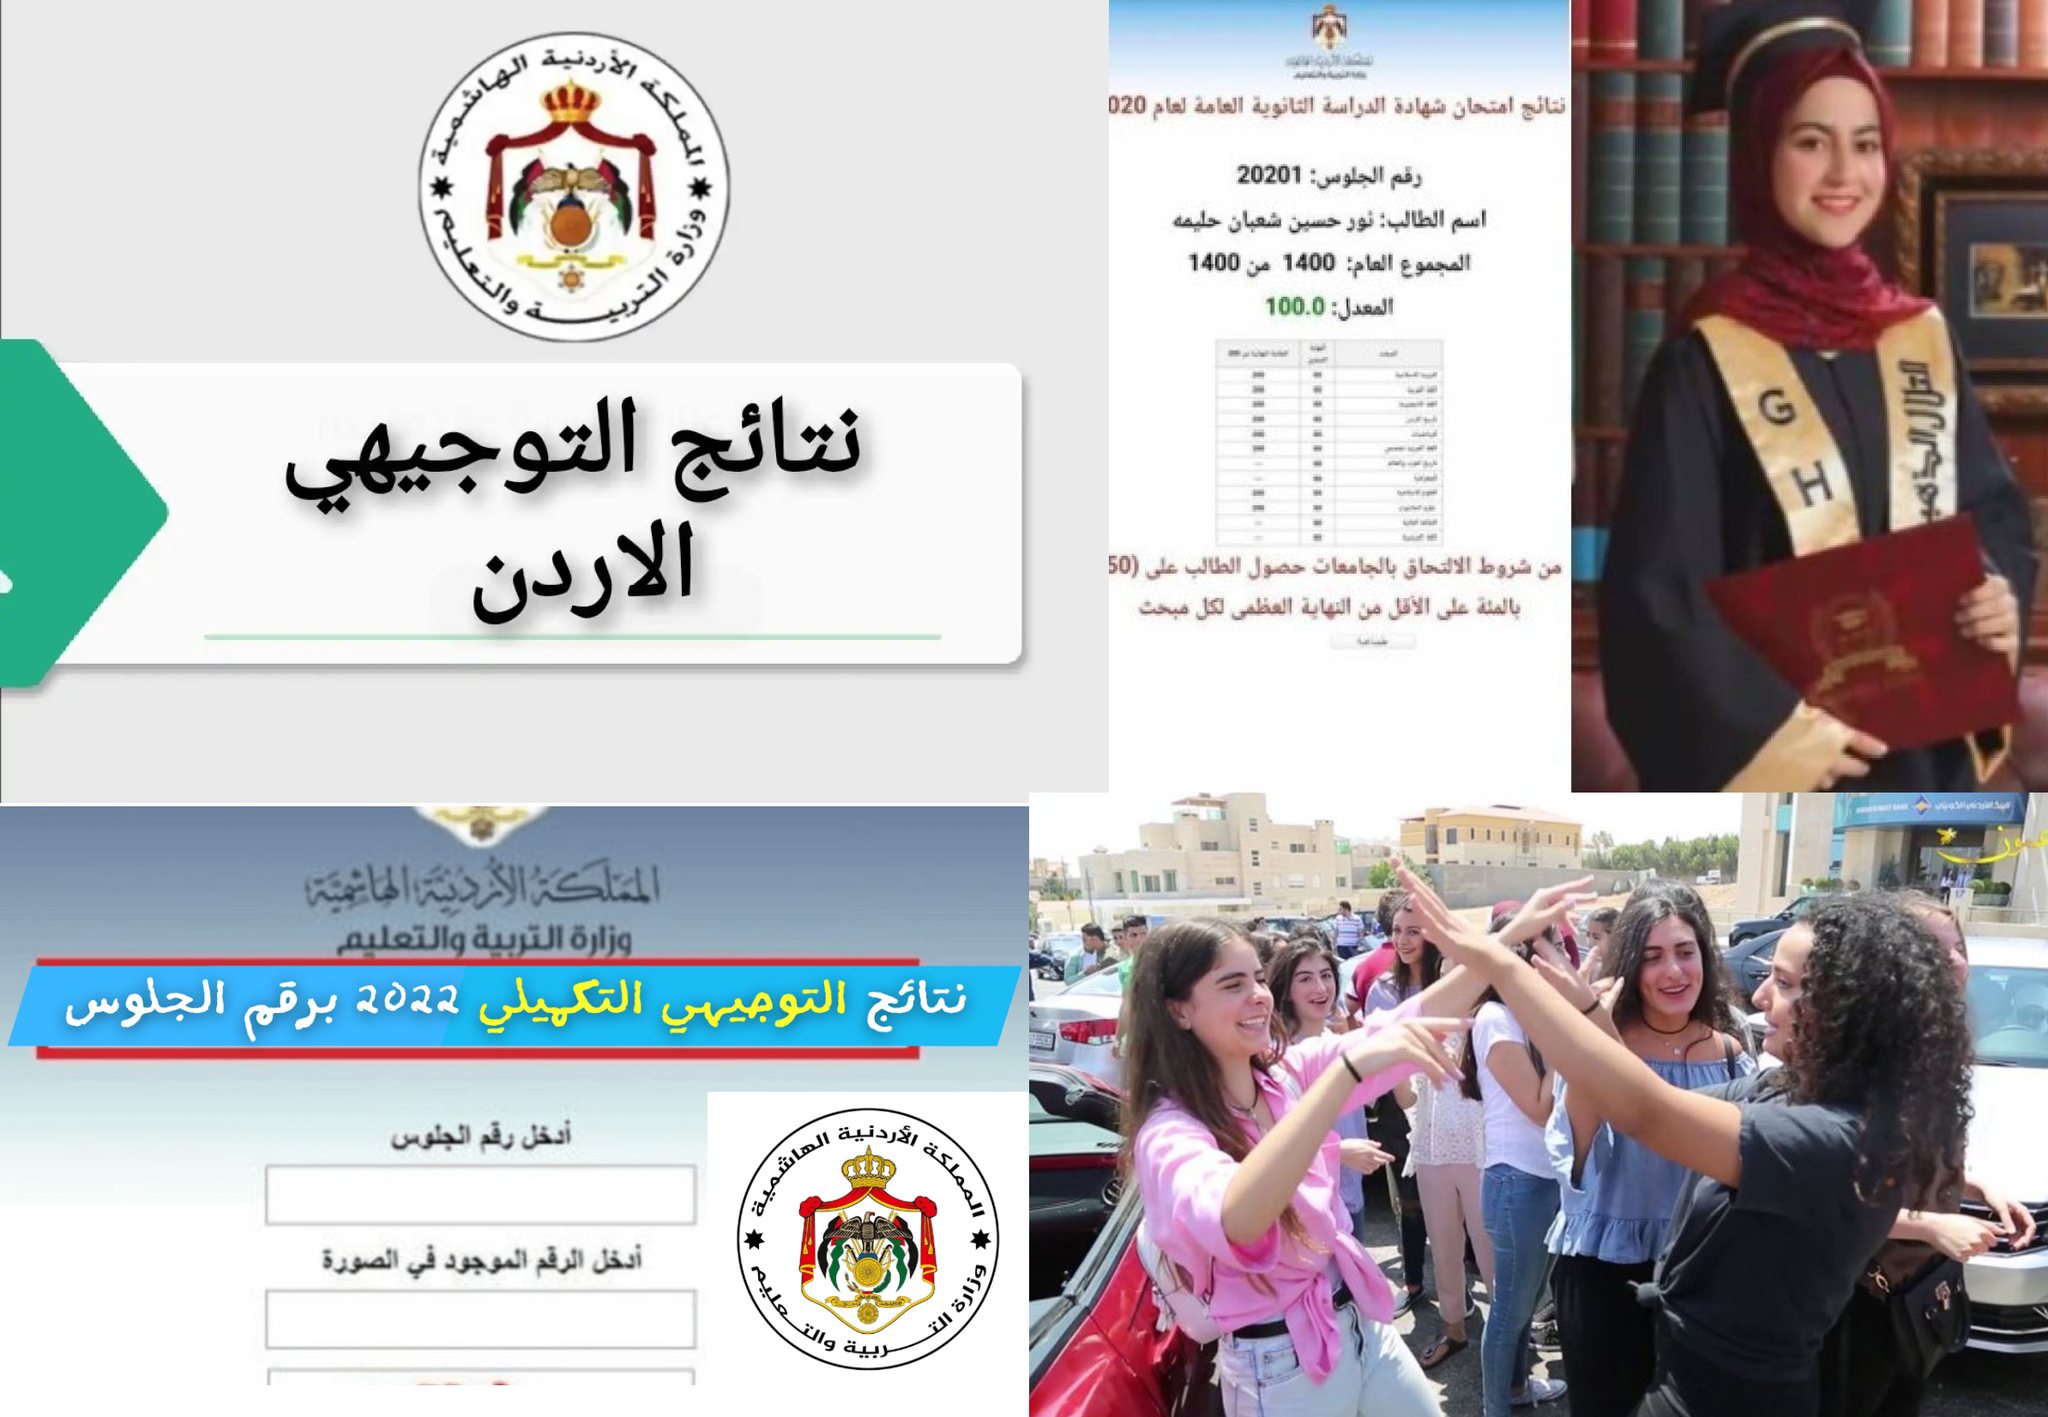 فجراً تفعيل رابط موقع نتائج التوجيهي التكميلي ٢٠٢٢ الأردن لامتحان الثانوية العامة الأردنية